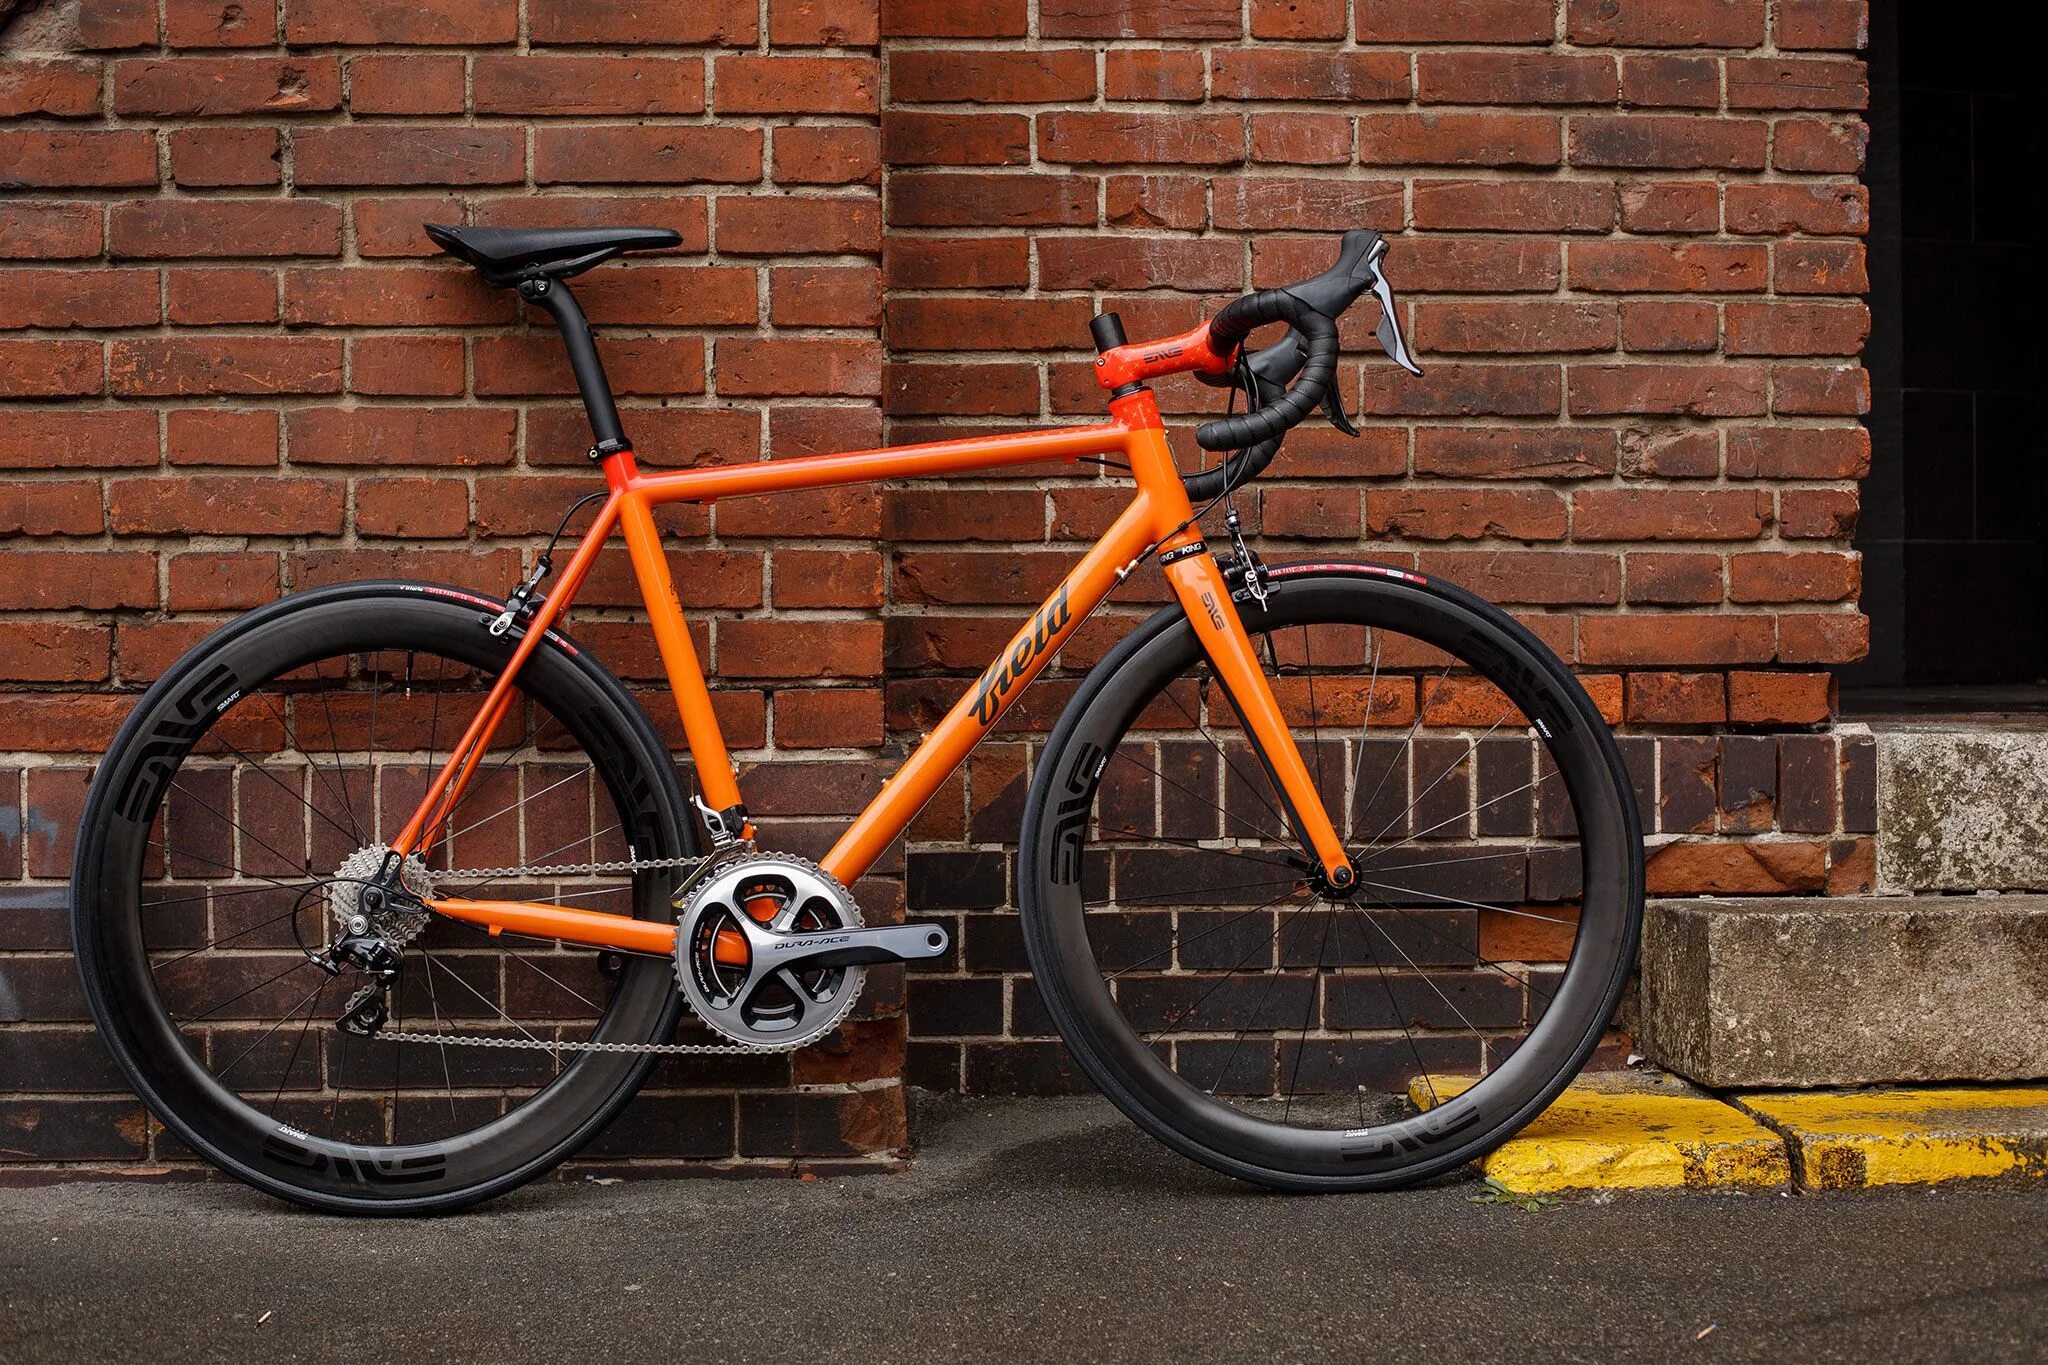 Велосипеды Orange Bikes. Gestalt g500 велосипед. МТБ велосипед черно оранжевый. Велосипед Gestalt Bicycle шоссейный. Цвета рамы велосипеда